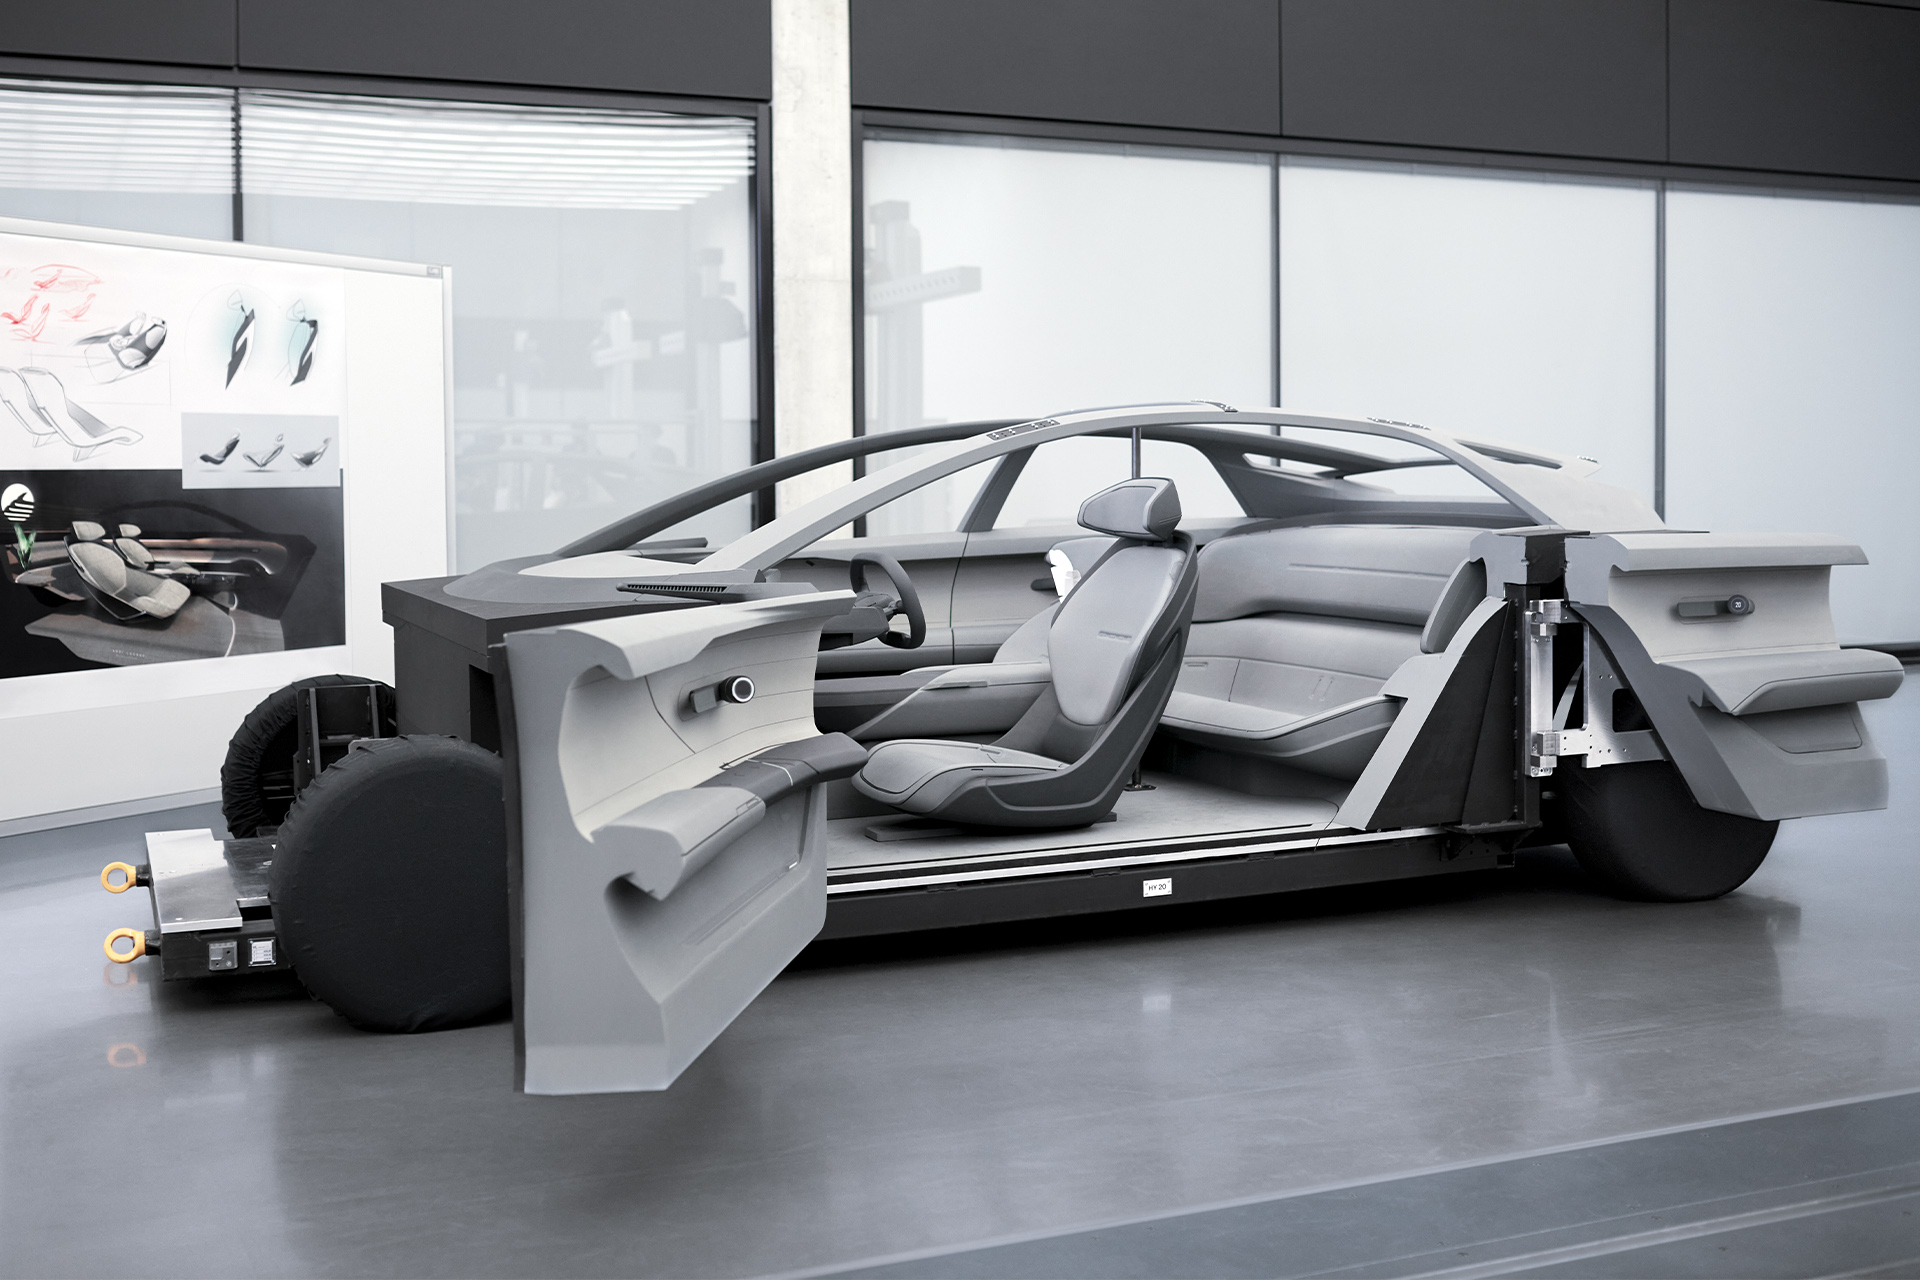 The Audi grandsphere concept with its doors open.